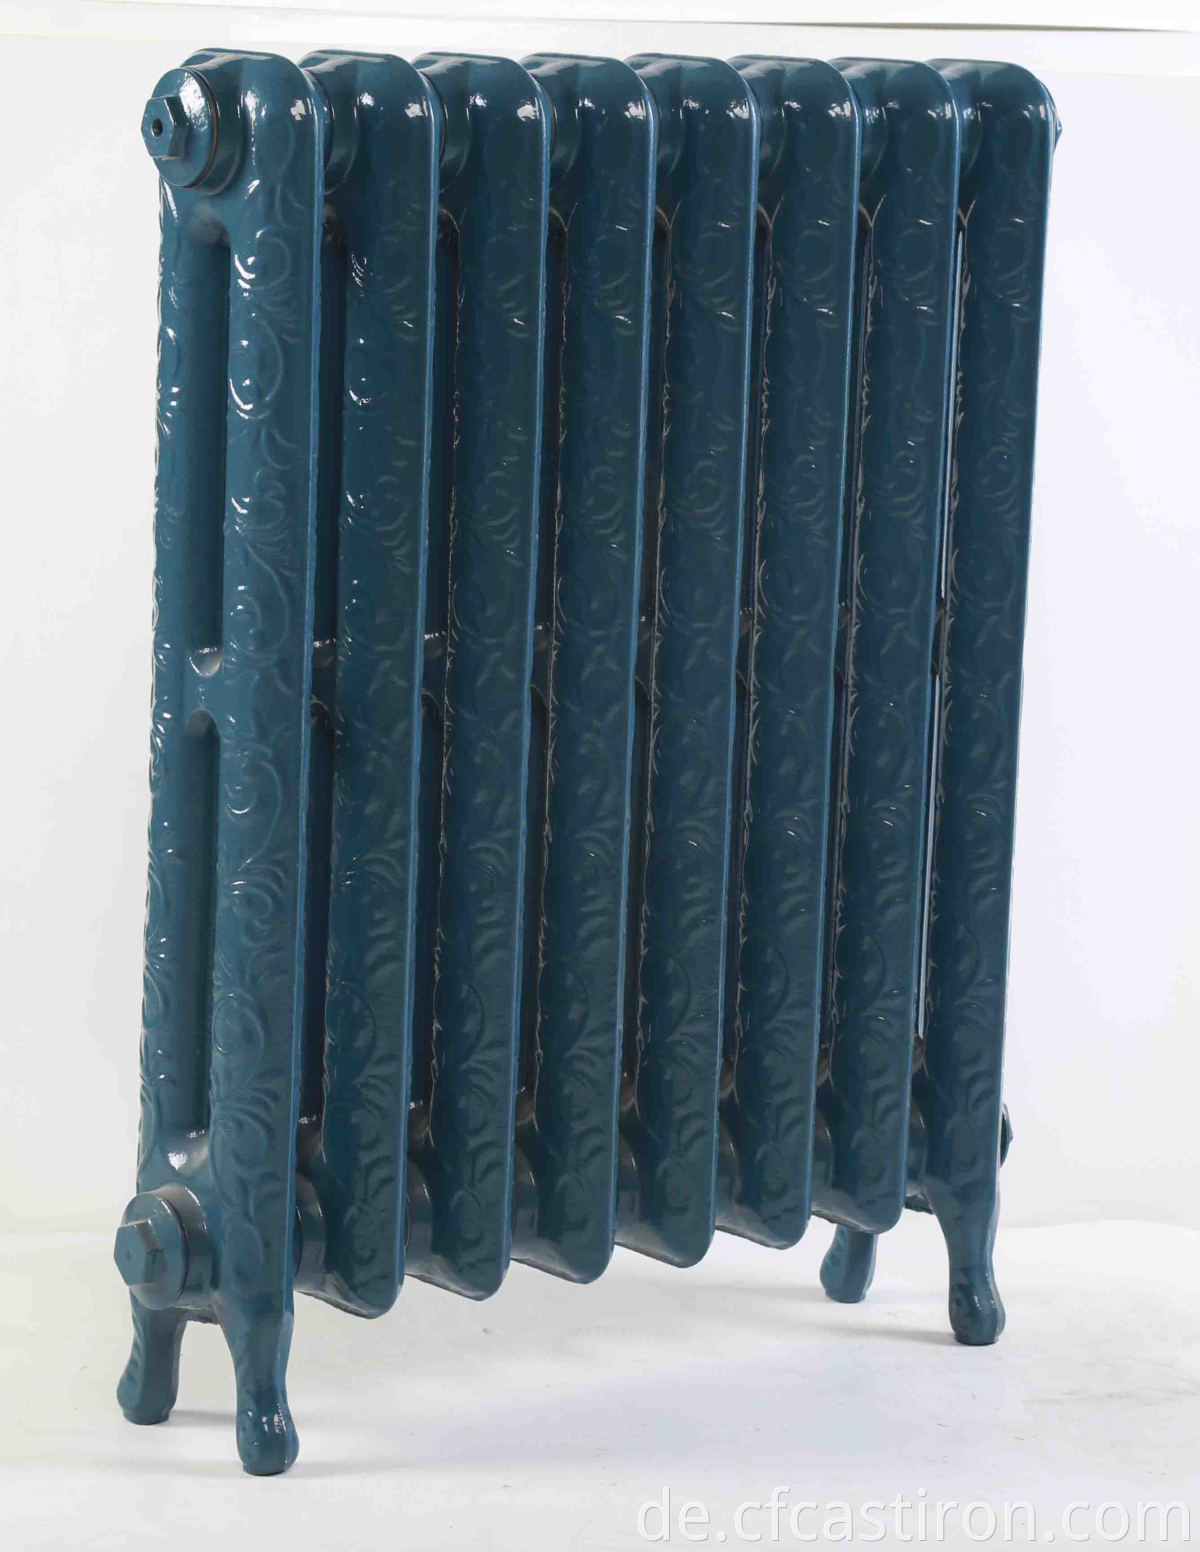 古董 华丽 铸铁散热器 ， 装饰 性 散热器 ， 家用 水暖散 热器 ， 维多利亚式 散热器 散热器 散热器